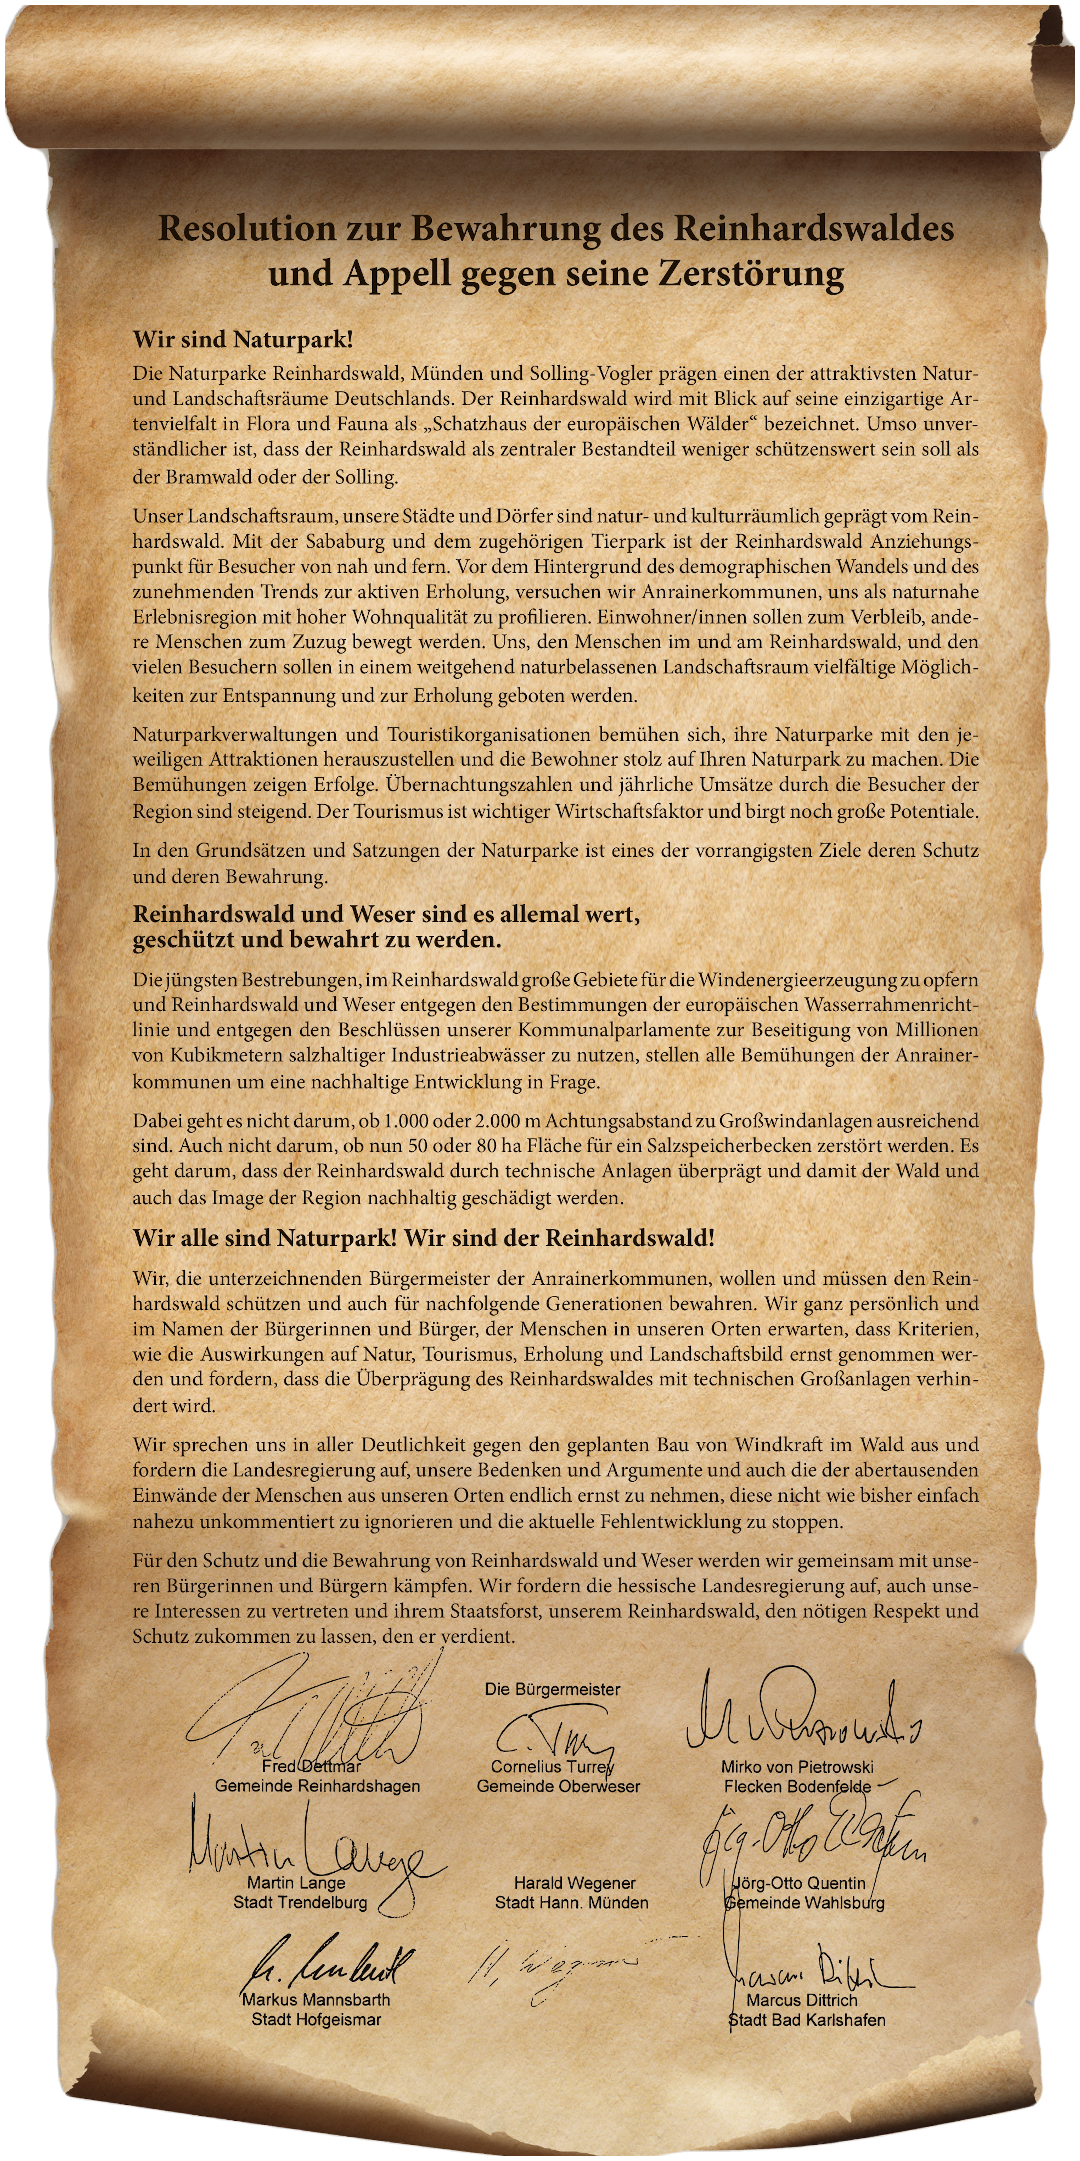 Resolution zur Bewahrung des Reinhardswaldes und Appell gegen seine Zerstörung